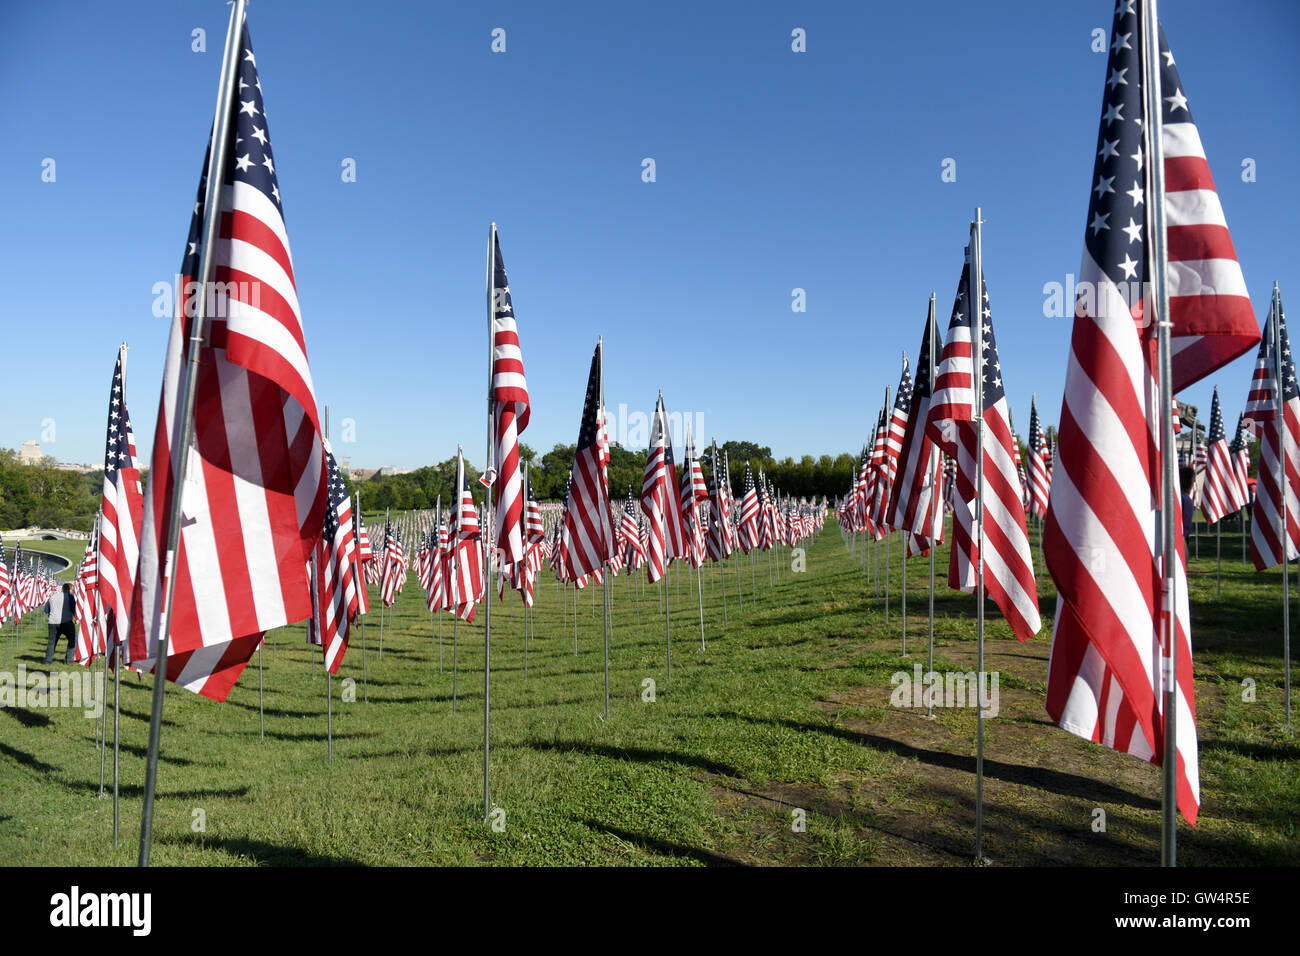 Saint Louis, MO - 11 septembre 2016 : plus de 7 000 drapeaux avec nom, photo et dog tag mort d'un militaire de la défense des États-Unis en dehors de la vague de Saint Louis Art Museum à Saint Louis, Missouri Crédit : Gino's Premium Images/Alamy Live News Banque D'Images